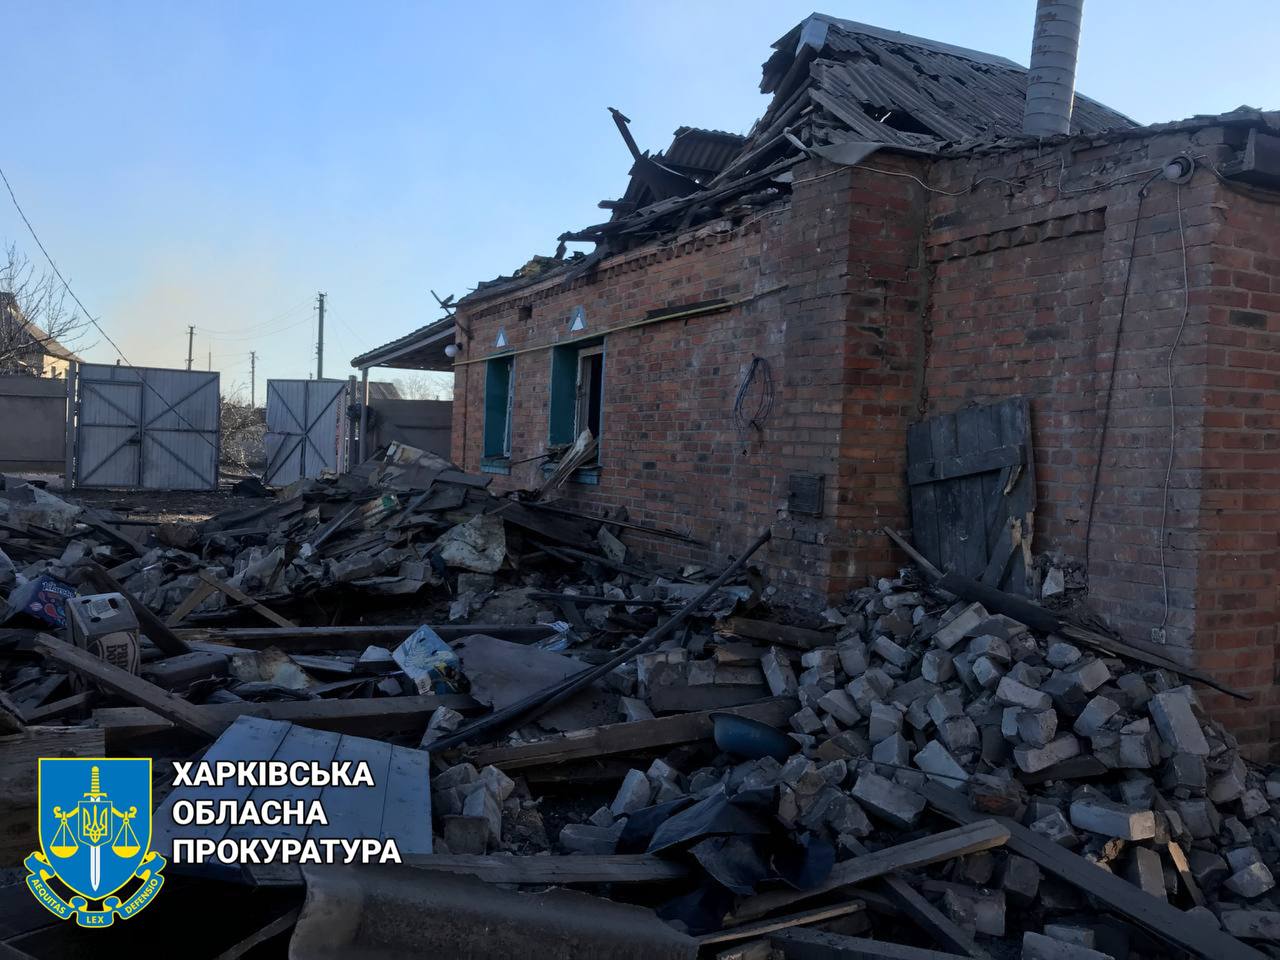 Наслідки обстрілу Куп’янського району, 5 грудня 2022 року © Харківська обласна прокуратура